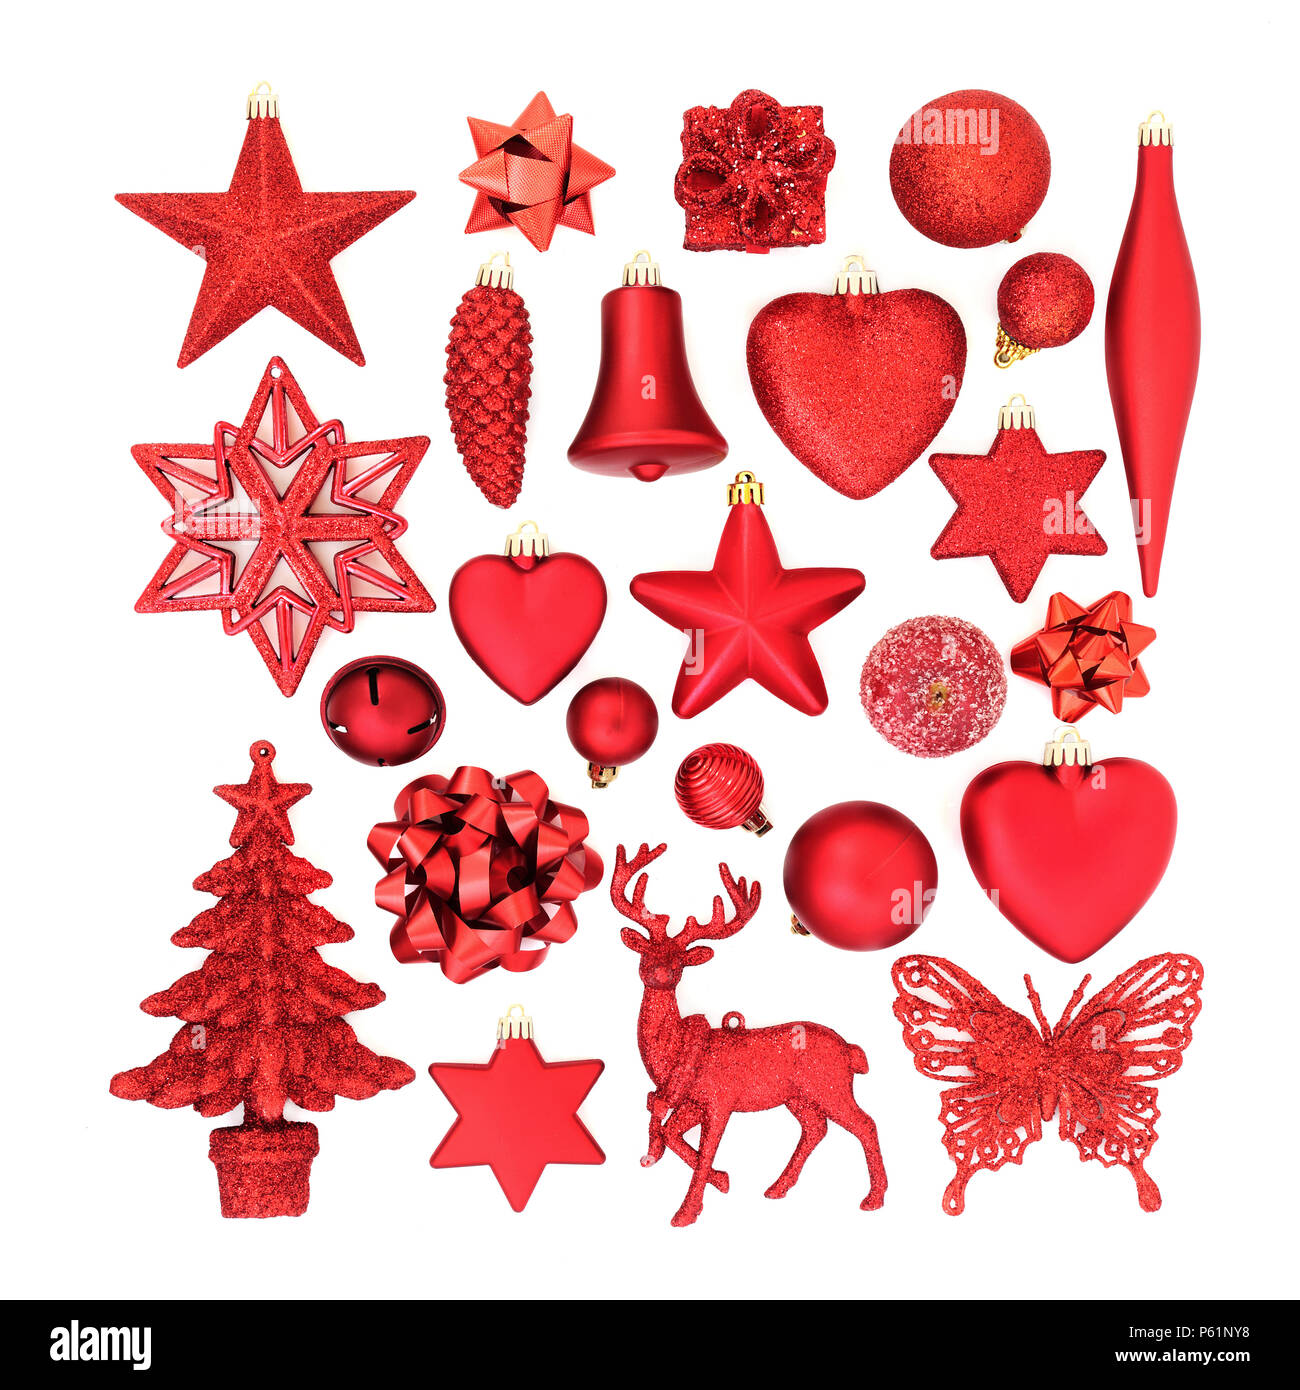 Red de décorations de Noël, Noël, ornements et symboles pour les fêtes sur fond blanc. Mise à plat. Banque D'Images